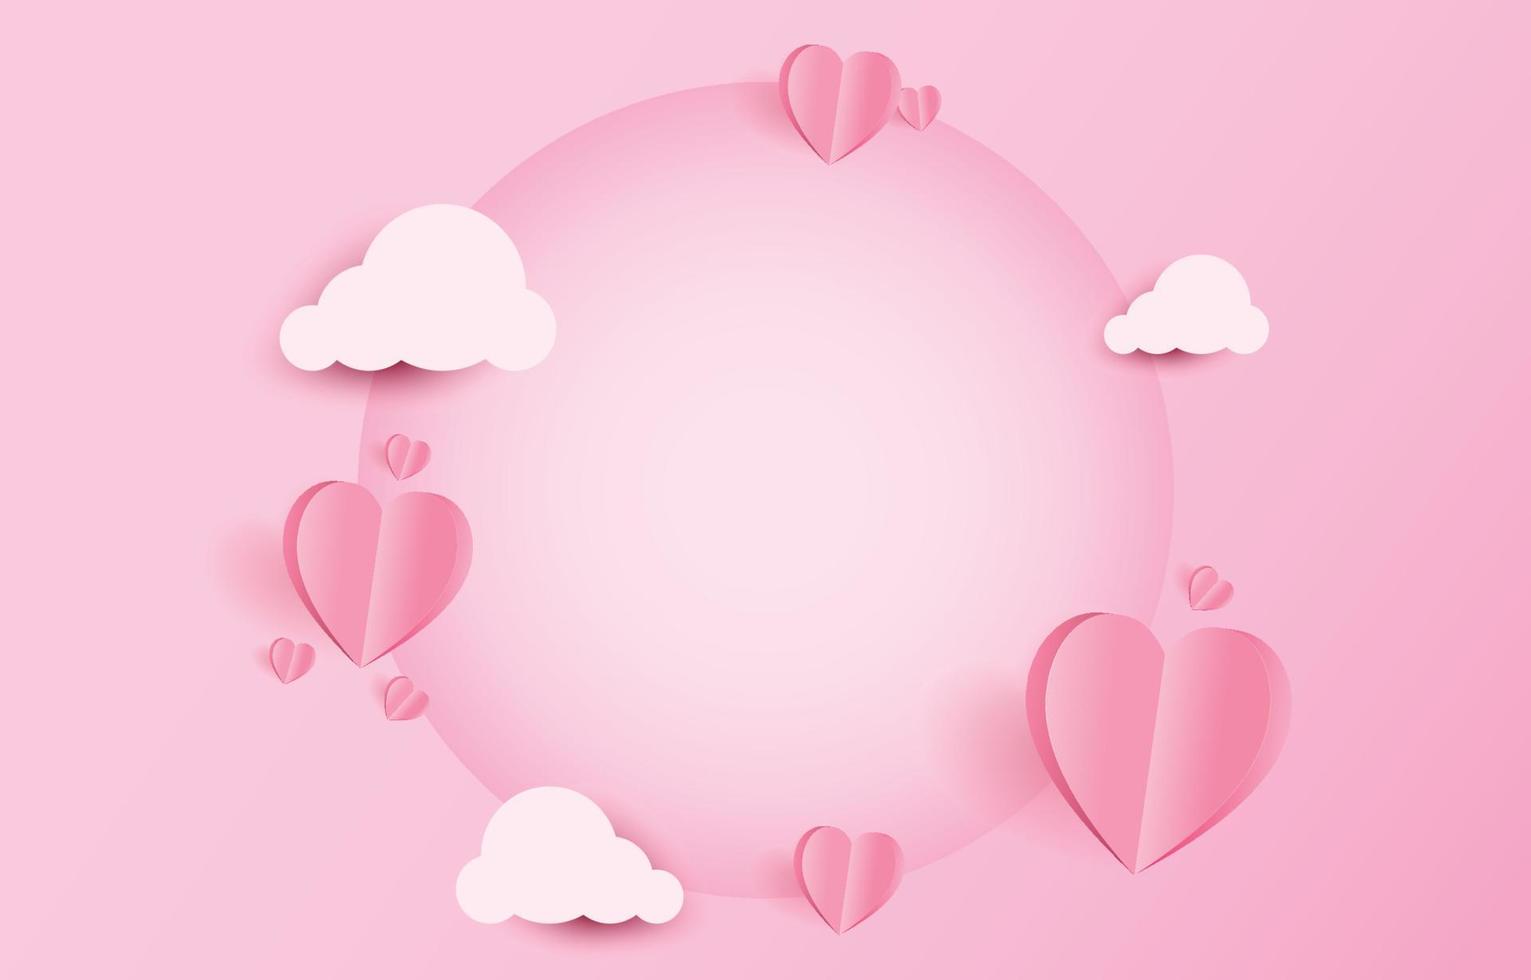 elementi tagliati in carta a forma di cuore volante e nuvole su sfondo rosa e dolce con una cornice circolare vuota. simboli vettoriali d'amore per il giorno di San Valentino felice, disegno della cartolina d'auguri di compleanno.